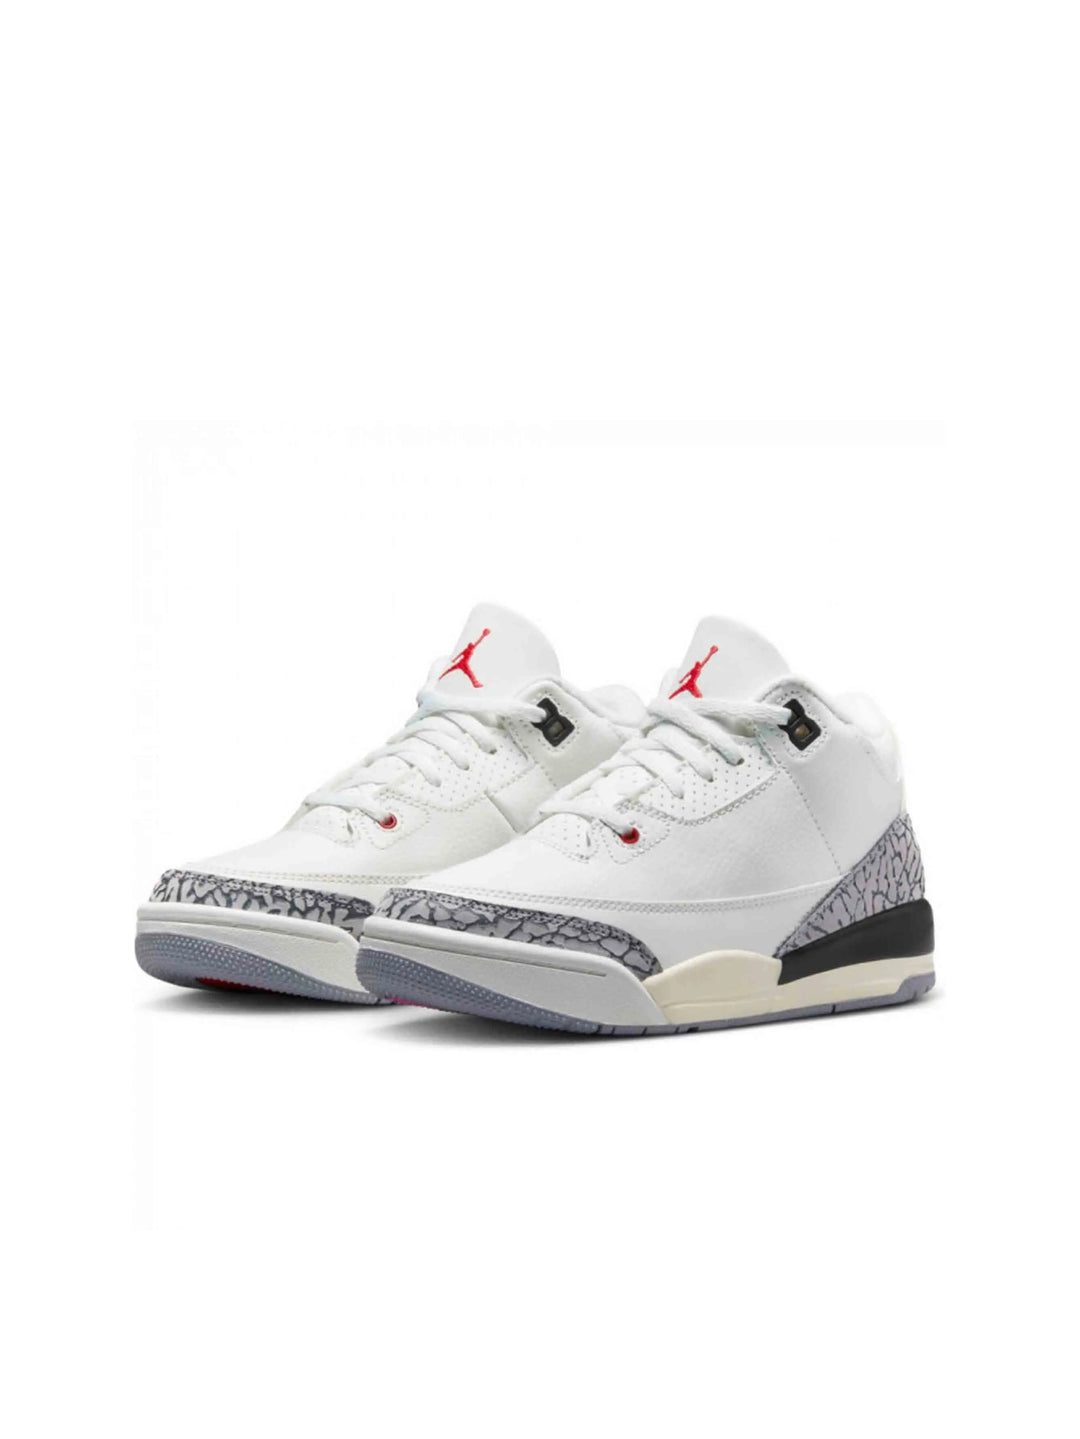 Nike Air Jordan 3 Retro White Cement Reimagined (PS) Prior